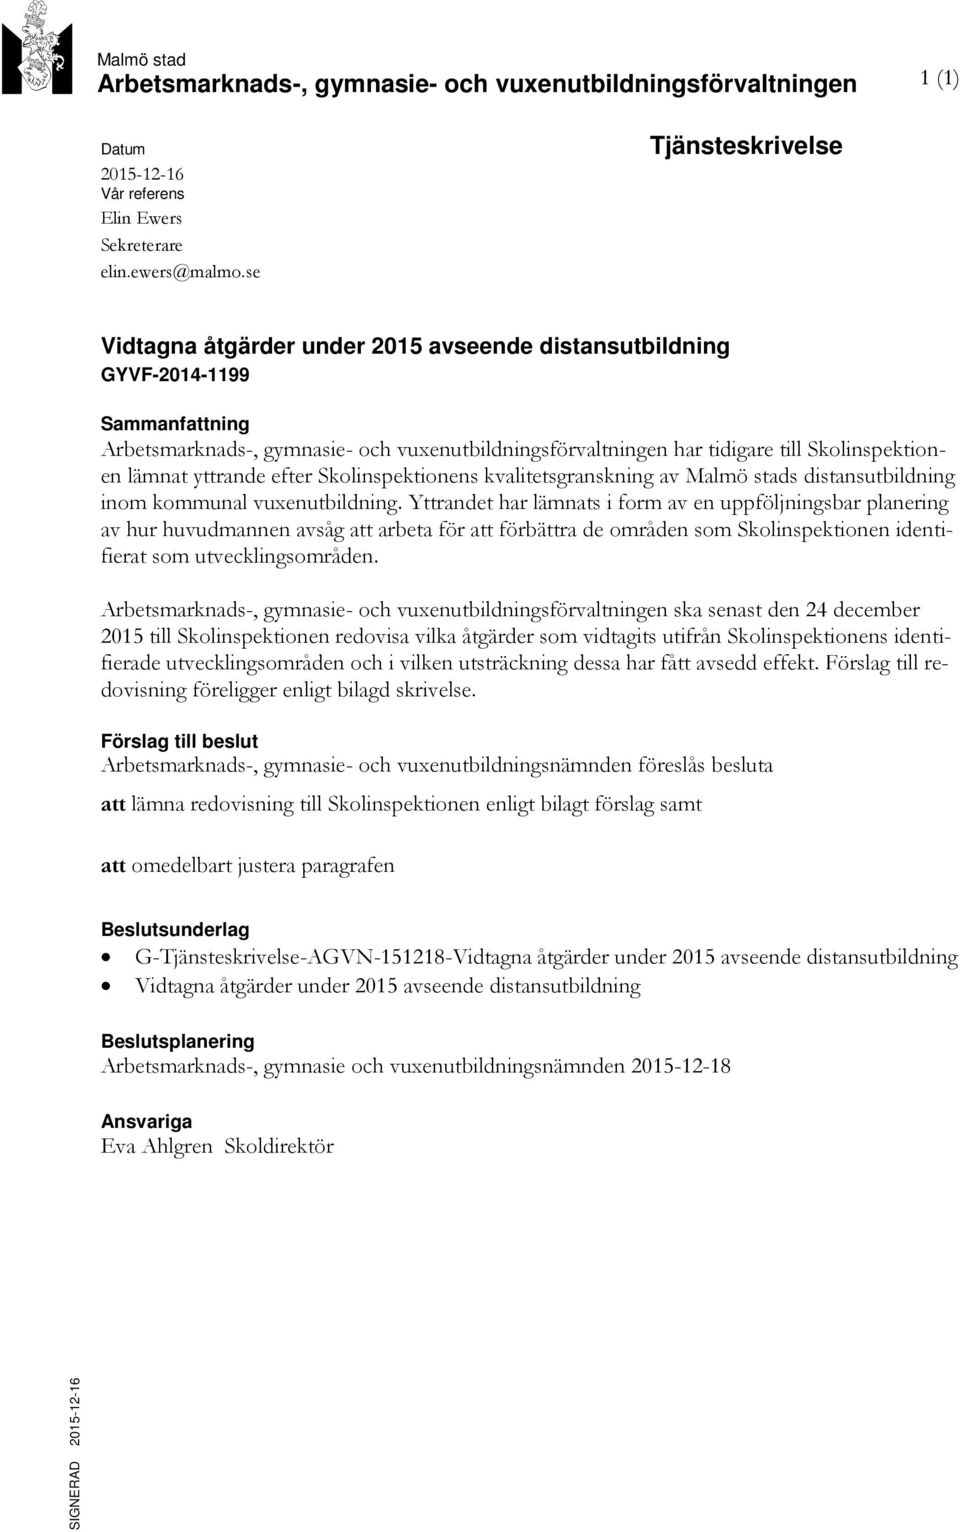 efter Skolinspektionens kvalitetsgranskning av Malmö stads distansutbildning inom kommunal vuxenutbildning.